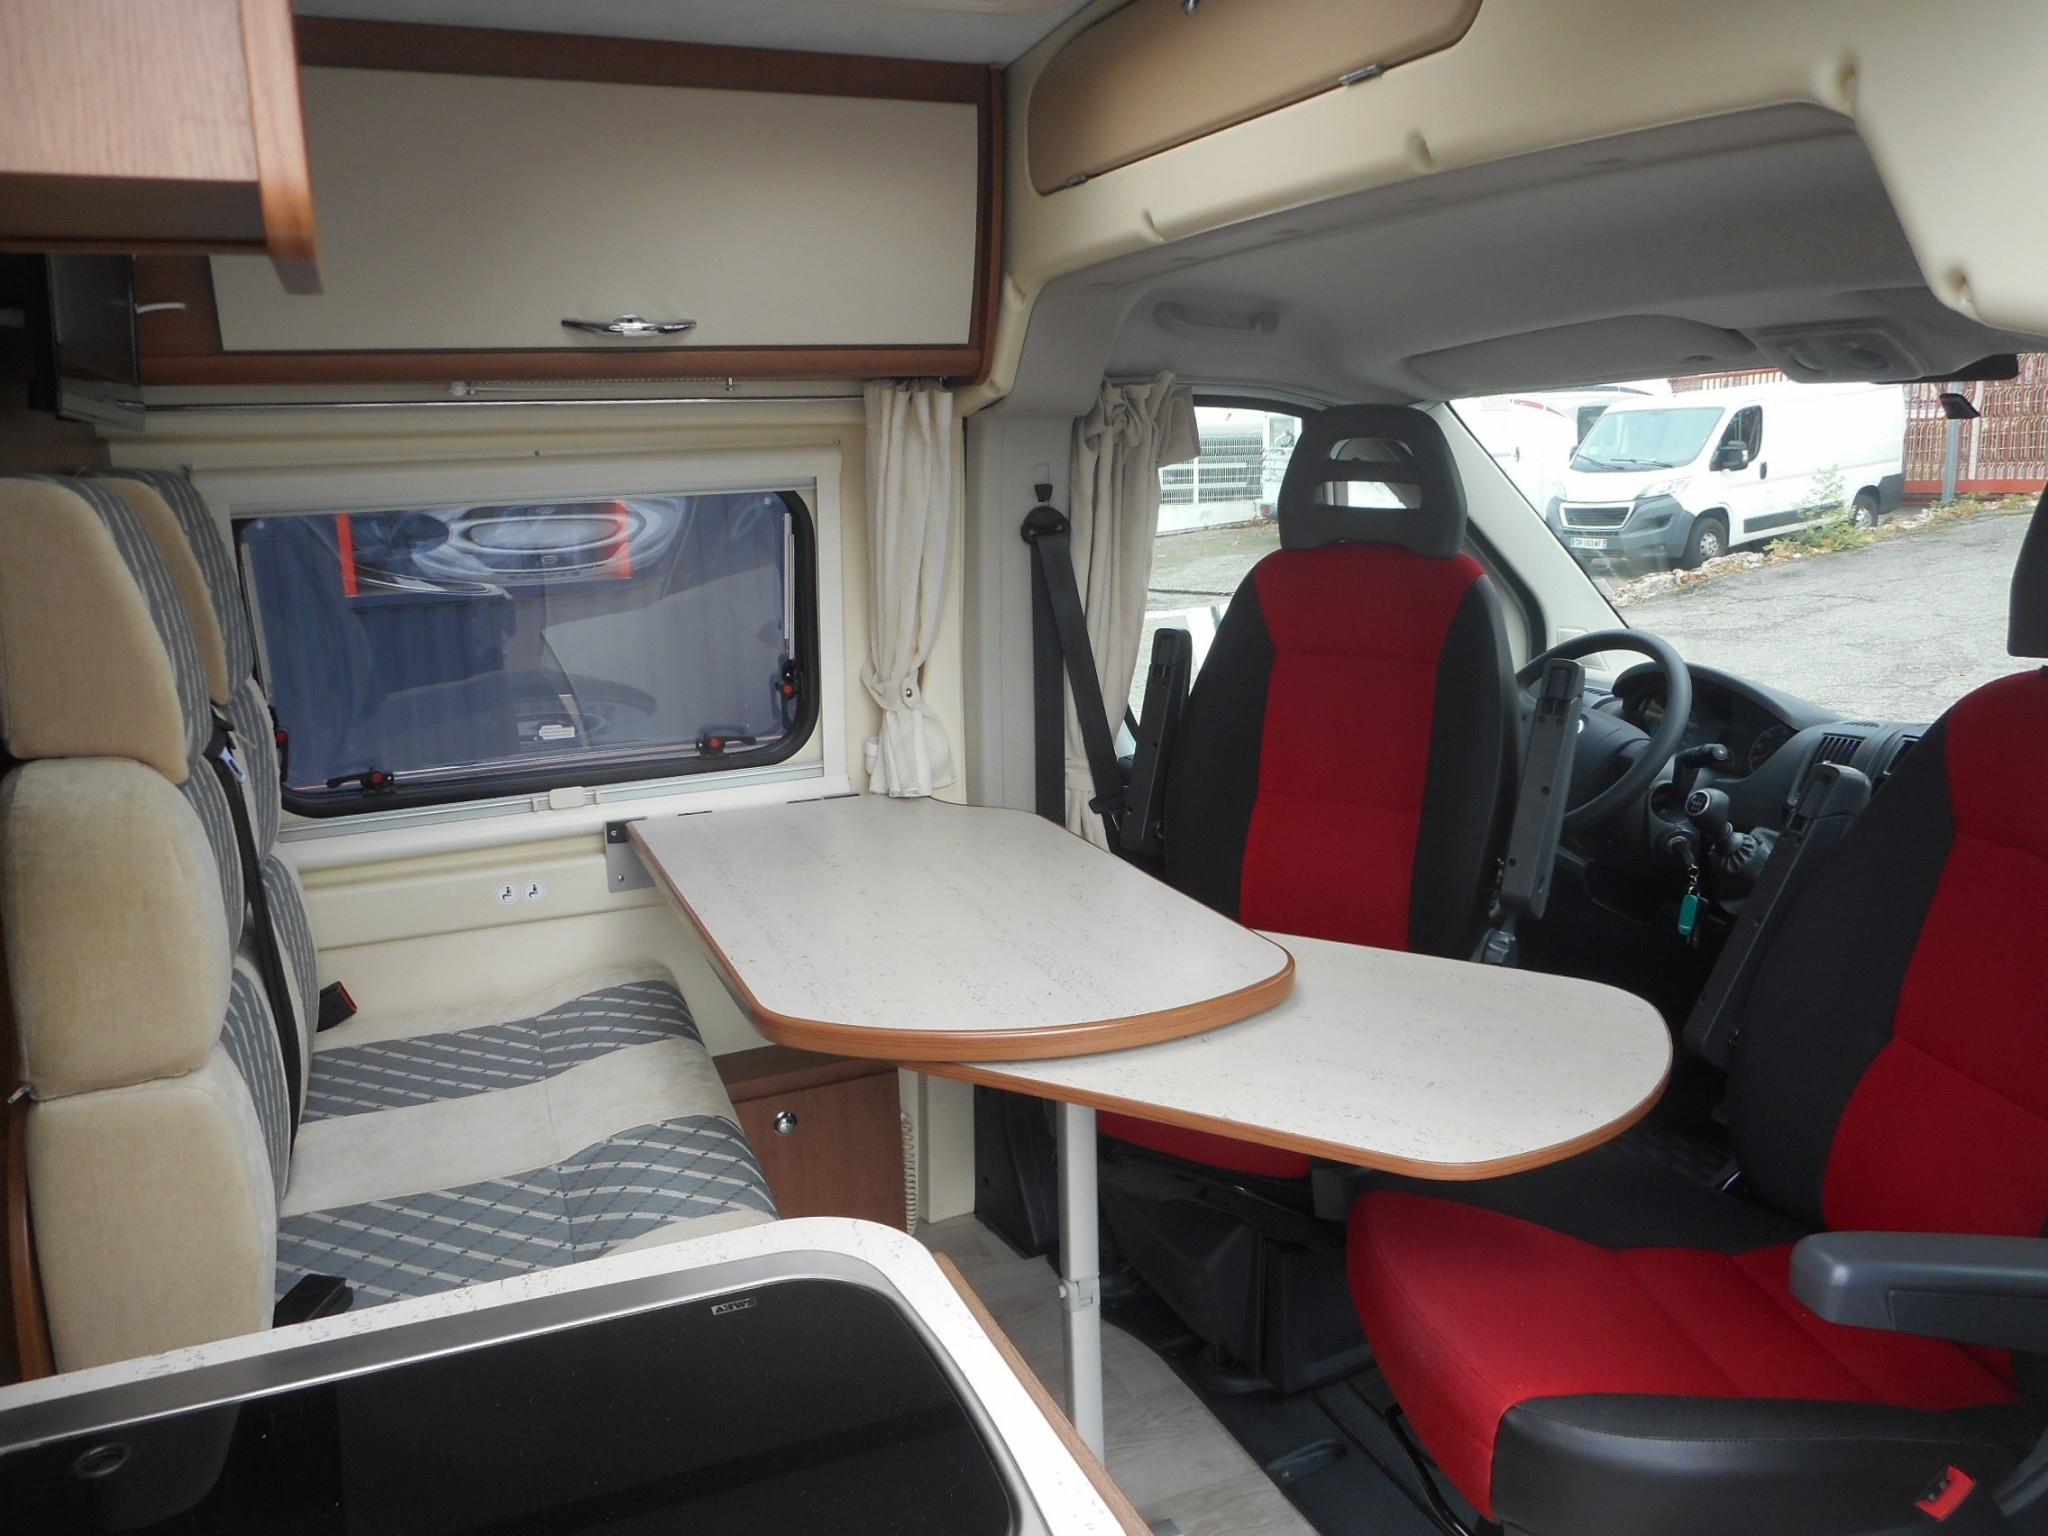 chausson twist 02 occasion de 2013 - fiat - camping car en vente  u00e0 fenouillet  haute-garonne